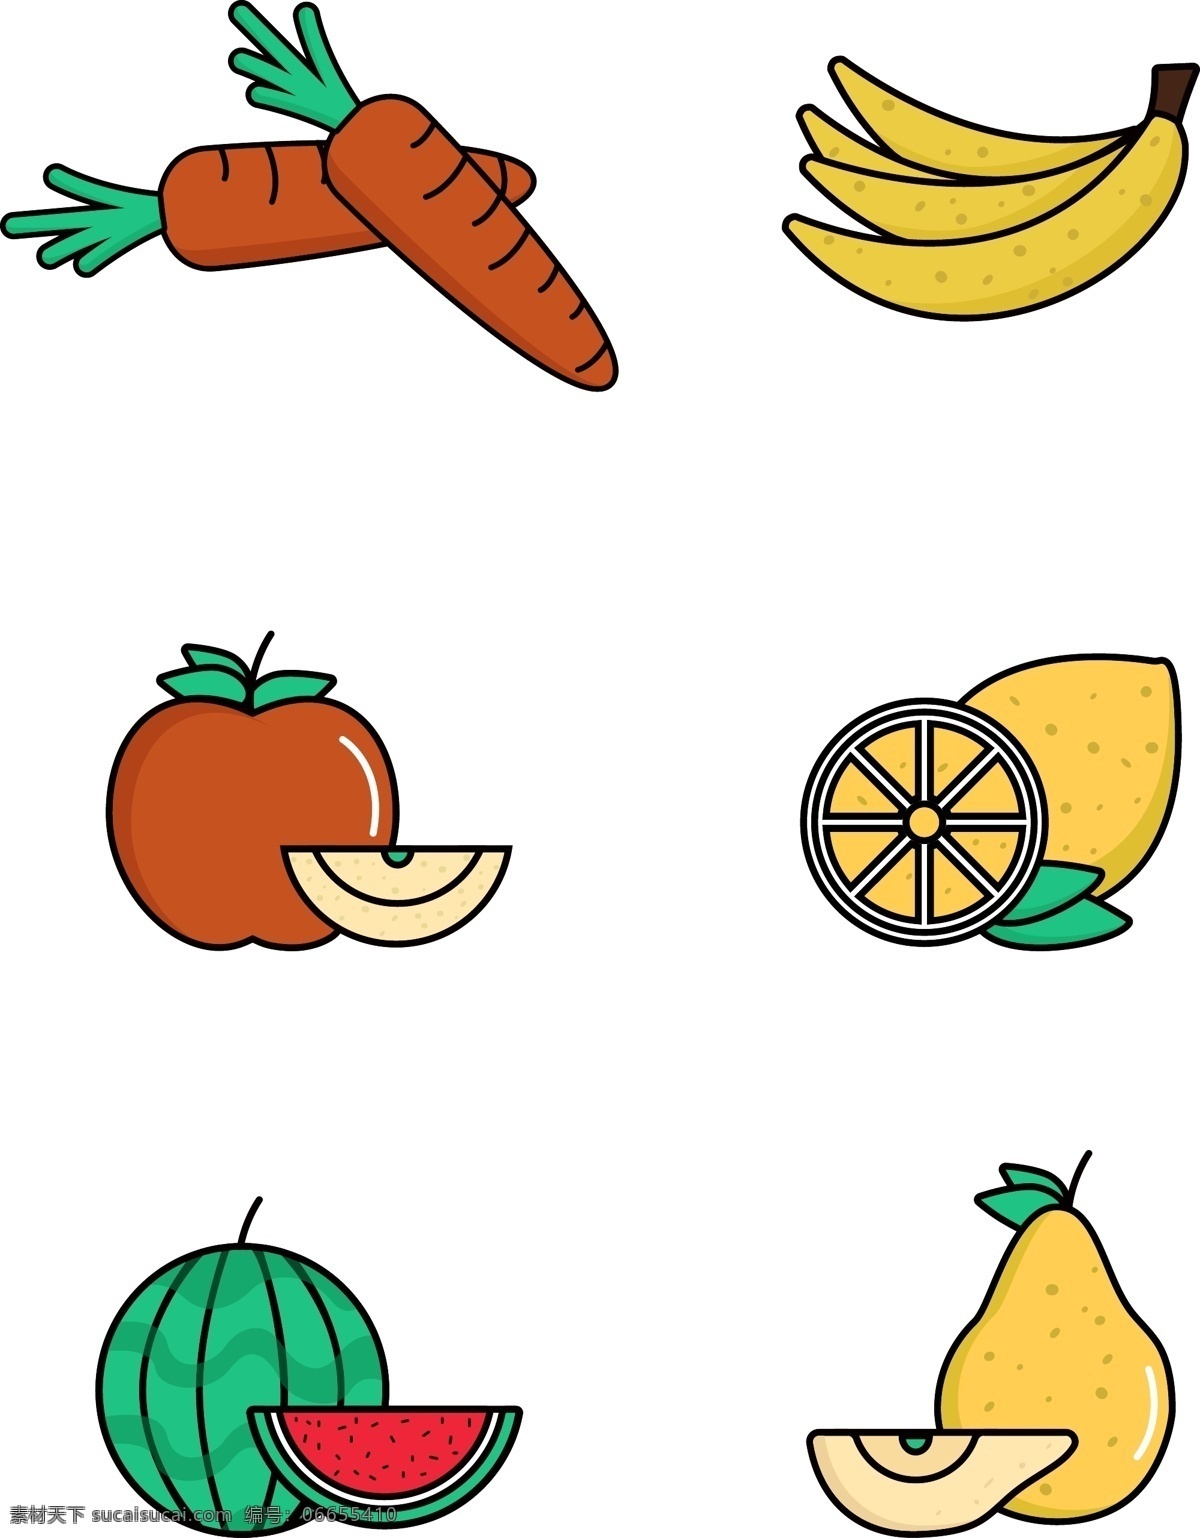 各种 食物 原创 水果 蔬菜 类 苹果 香蕉 胡萝卜 西瓜 各种食物